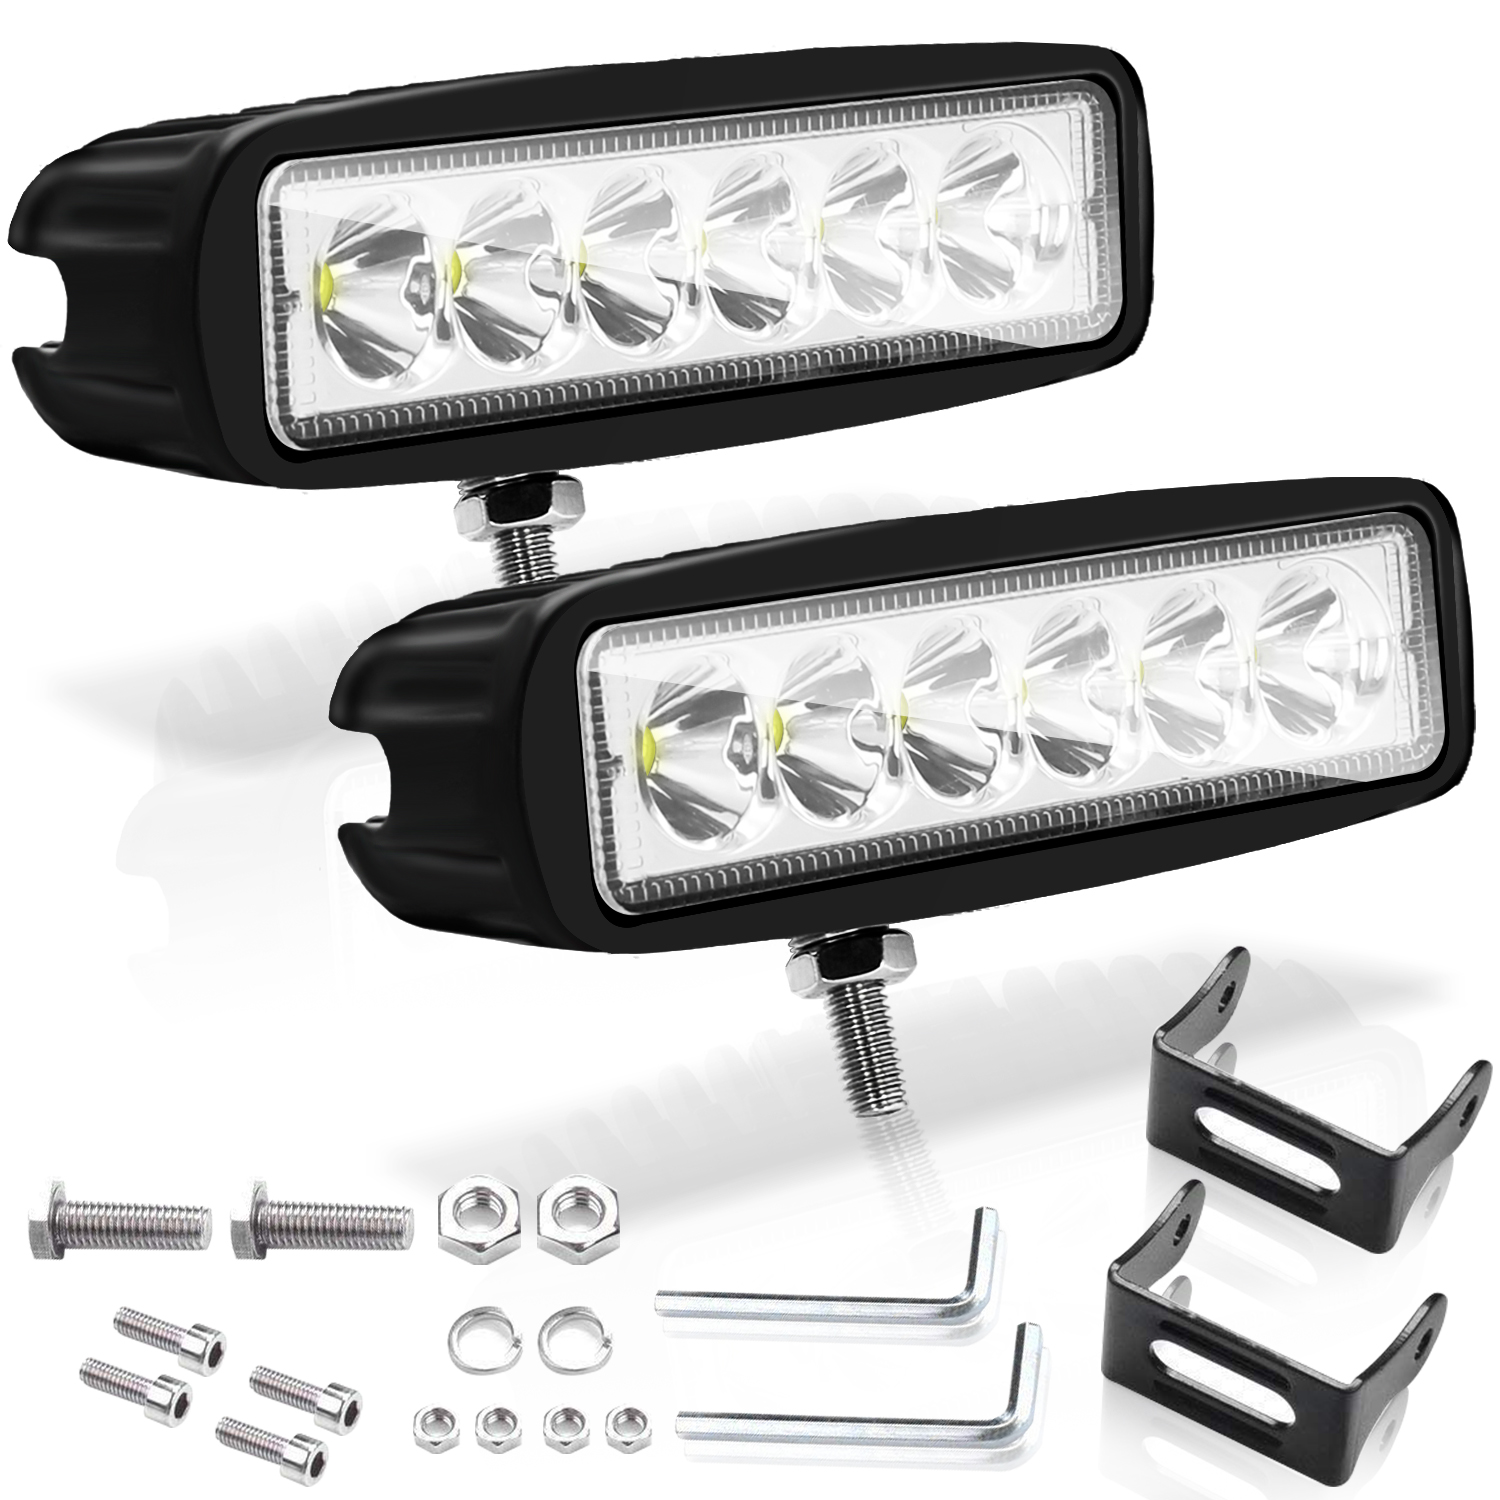 2x KFZ PKW Auto LED Standlicht 12V Licht Lampen, Kfz Lampen & Leuchtmittel, Teile & Zubehör, Auto